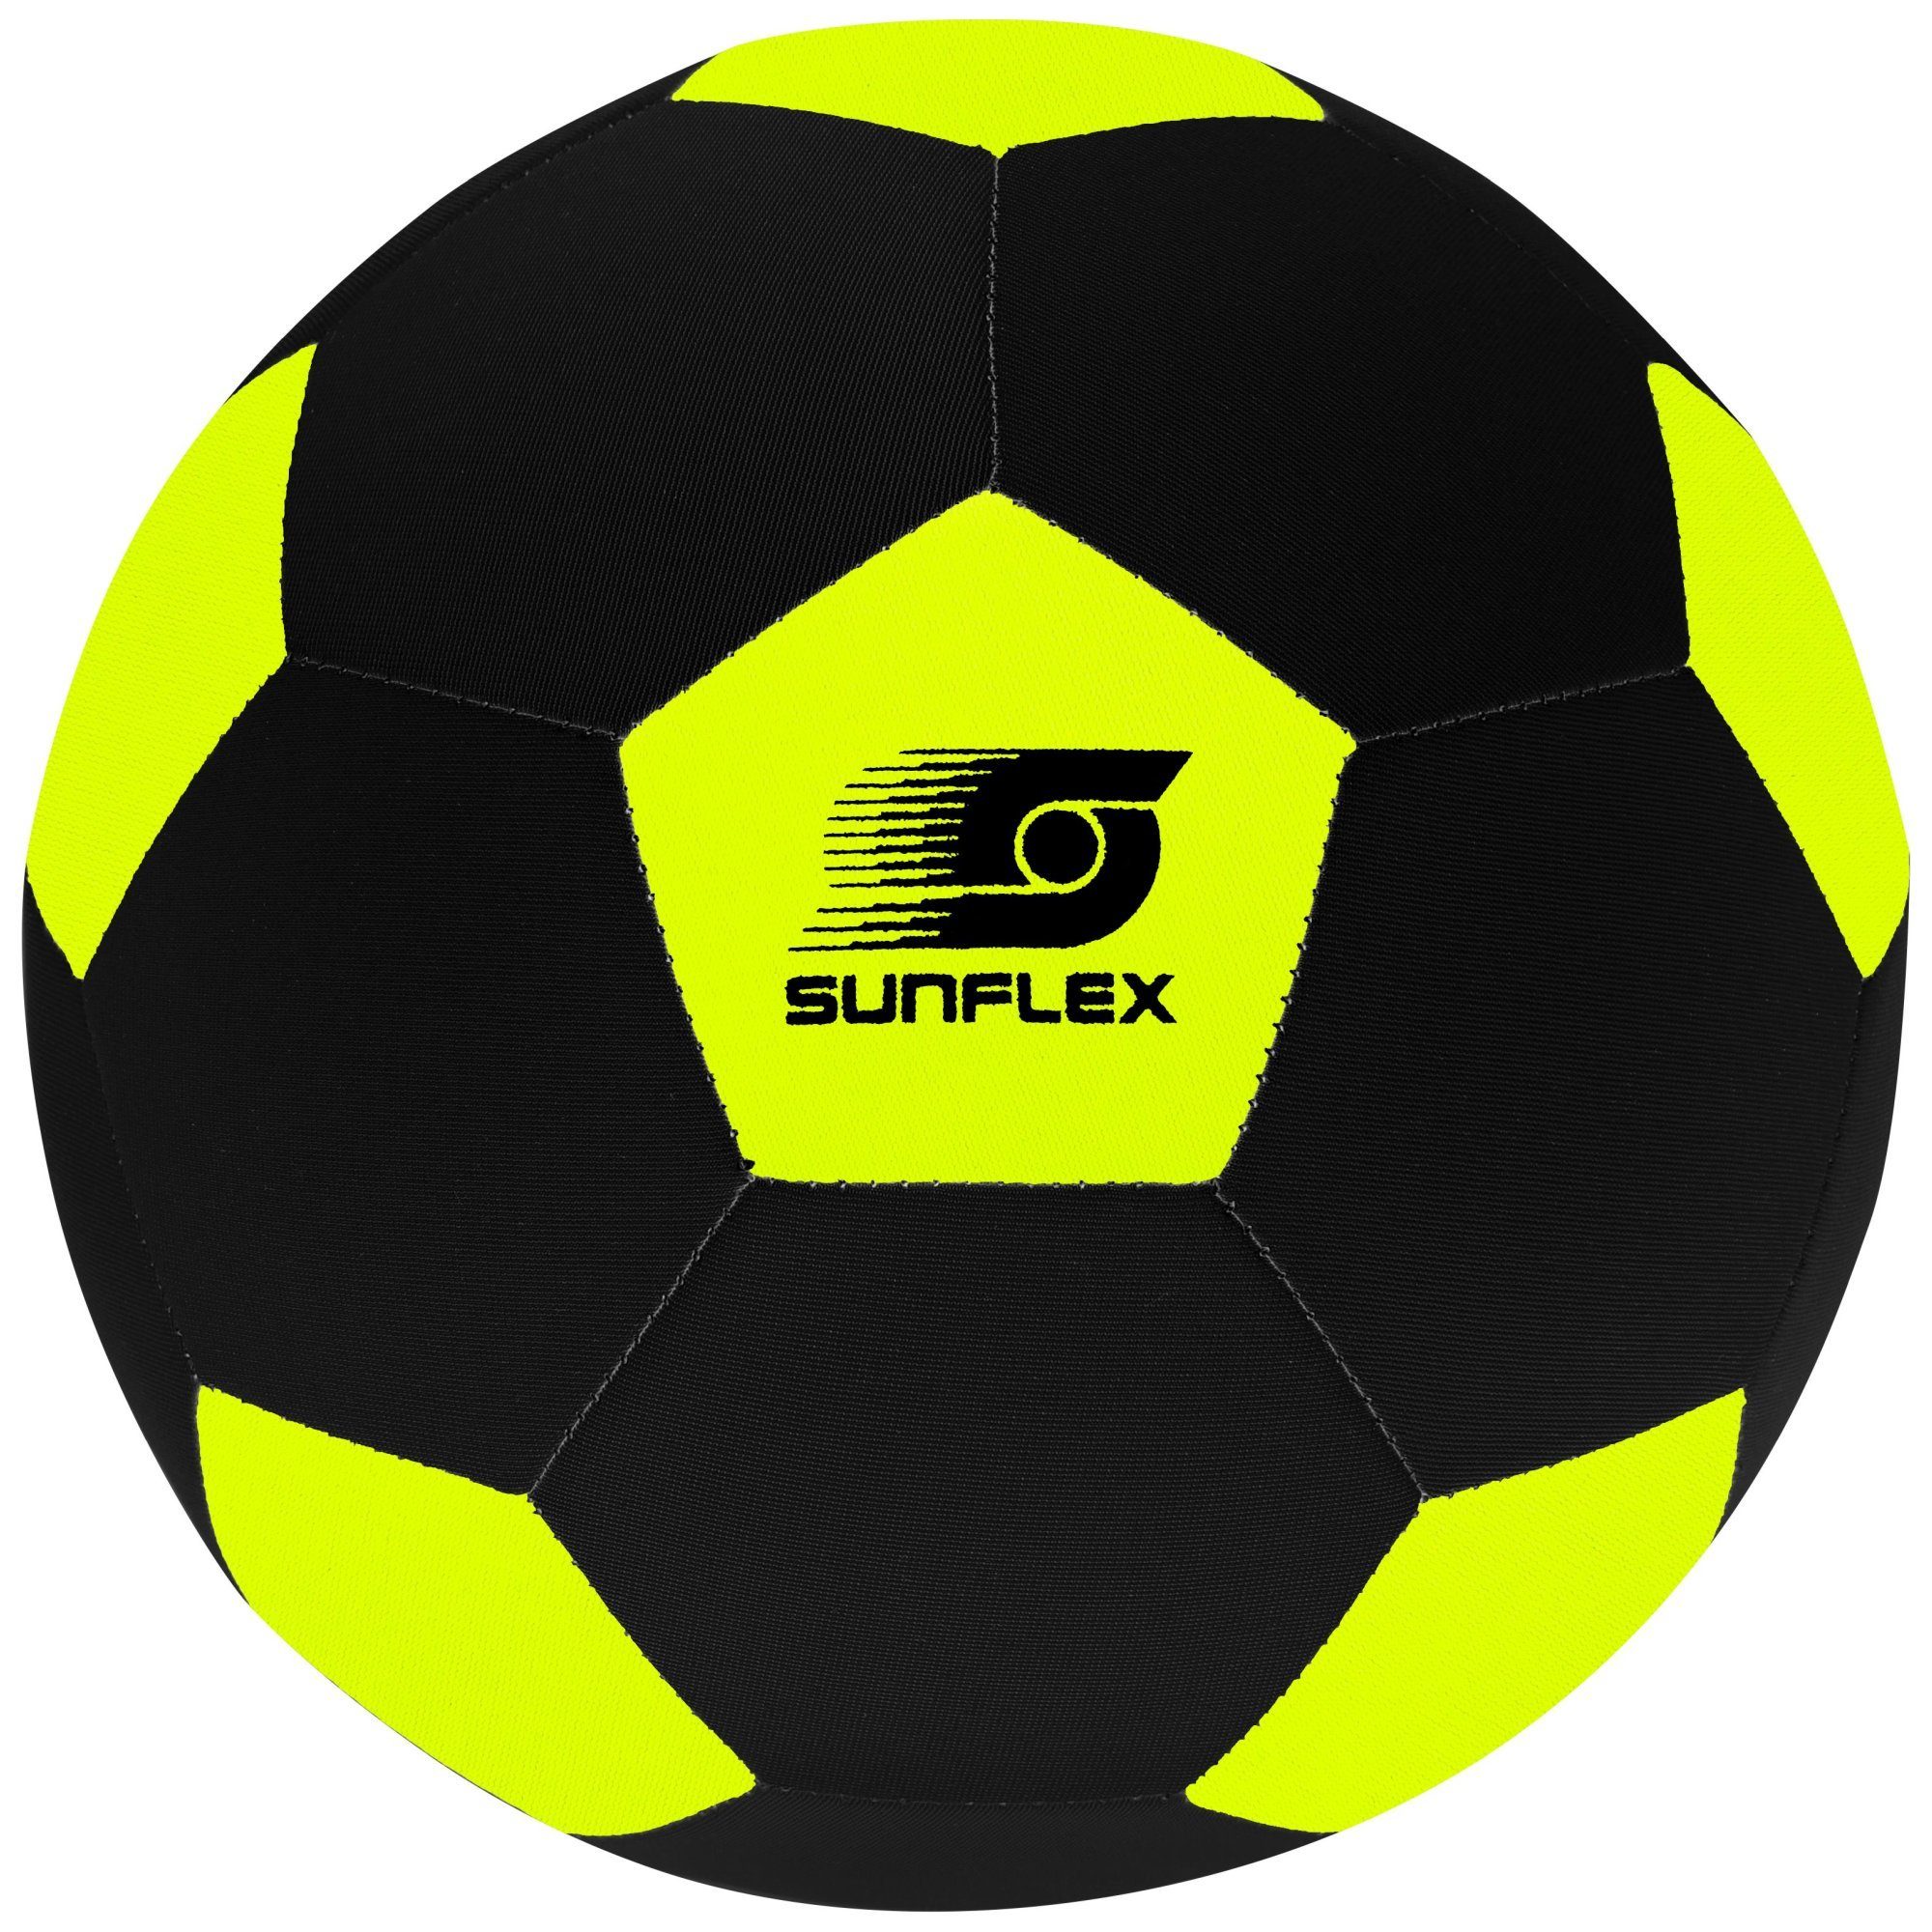 Sunflex Fußball sunflex Neopren Fußball Size 3 gelb